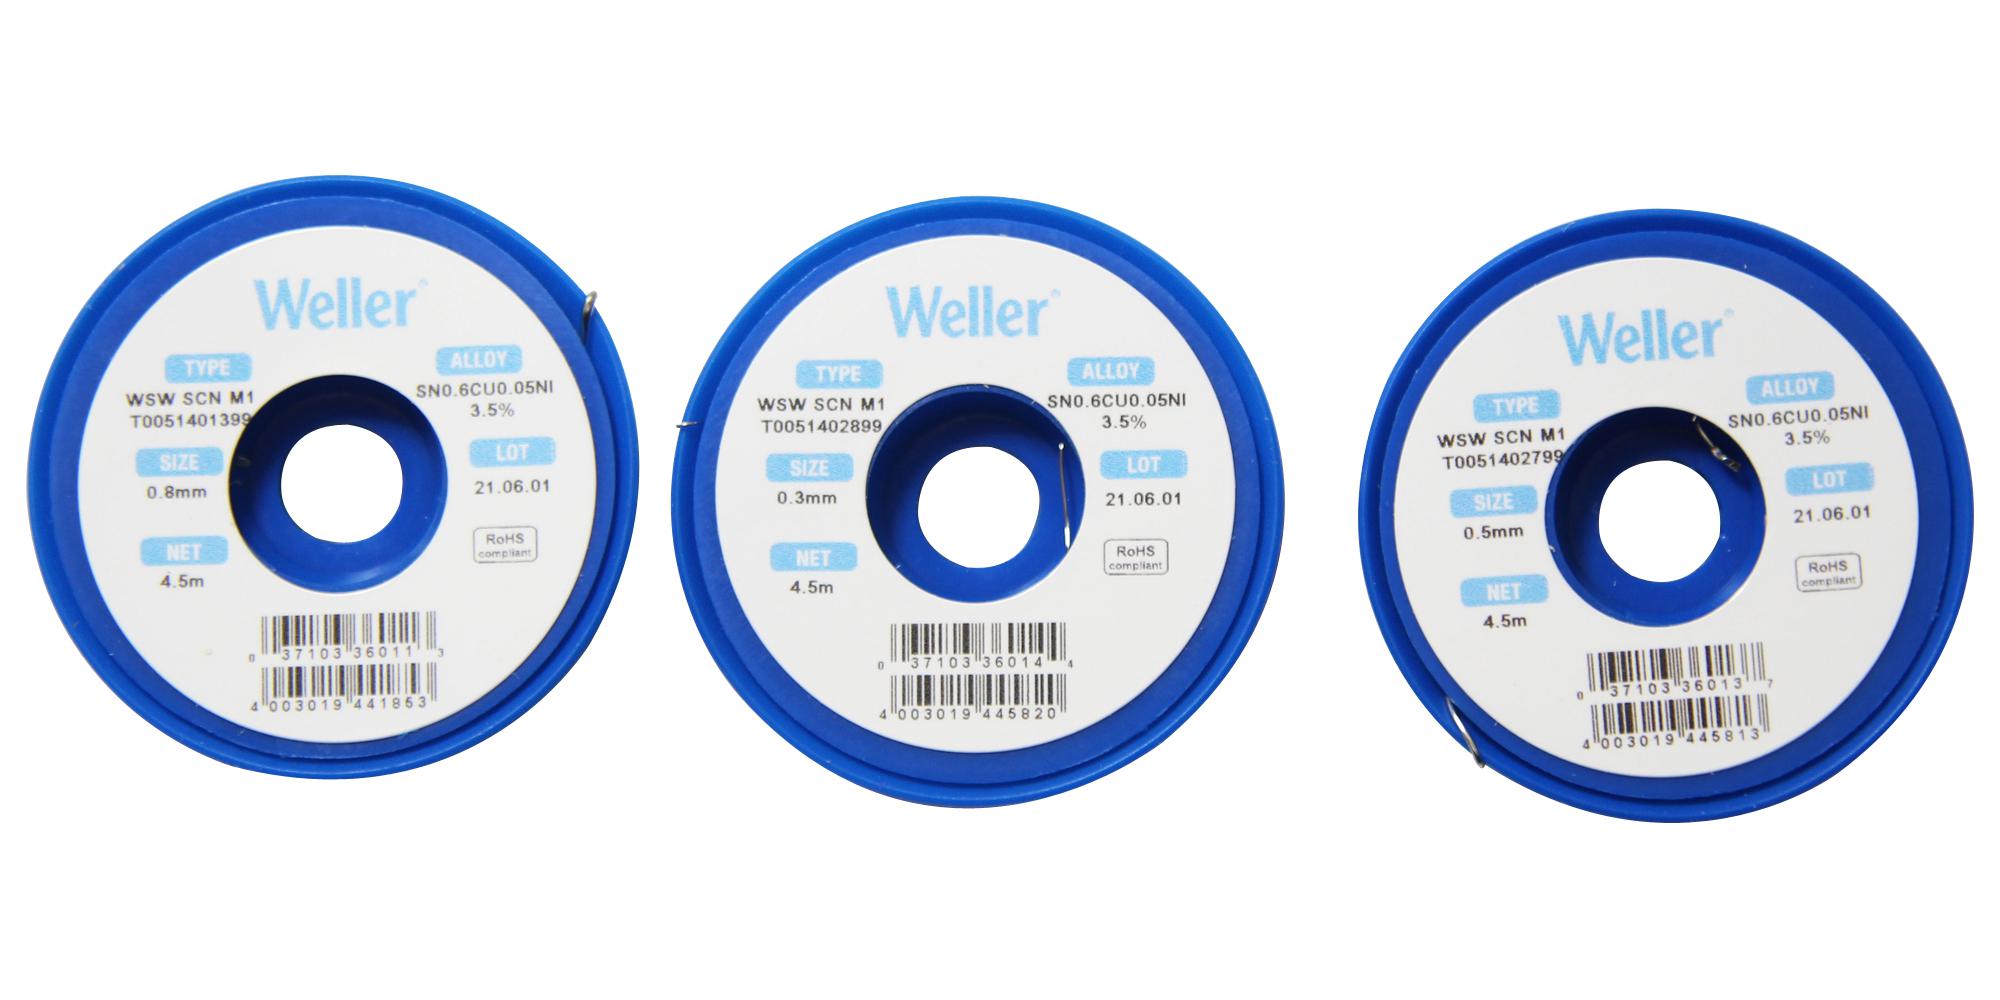 Weller T0051402999 Solder Wire, 99.3/0.6/0.05 Sn/cu/ni, 21G